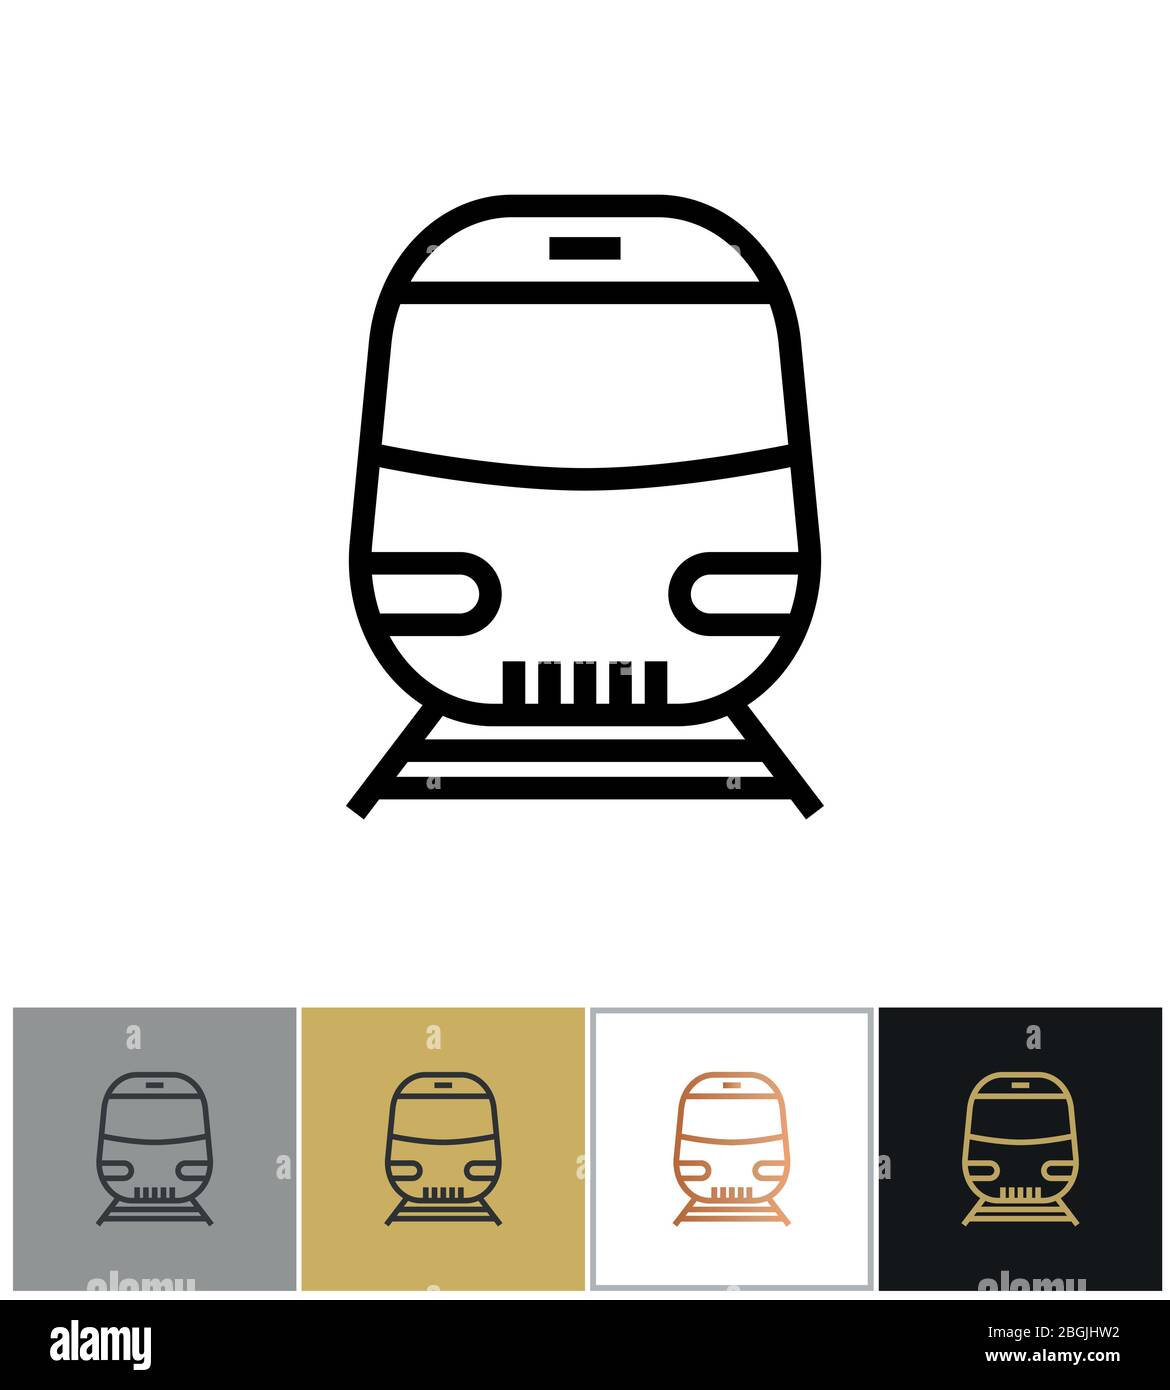 Icona del treno, cartello dei trasporti ferroviari o simbolo della metropolitana su sfondi bianchi e neri. Illustrazione vettoriale Illustrazione Vettoriale